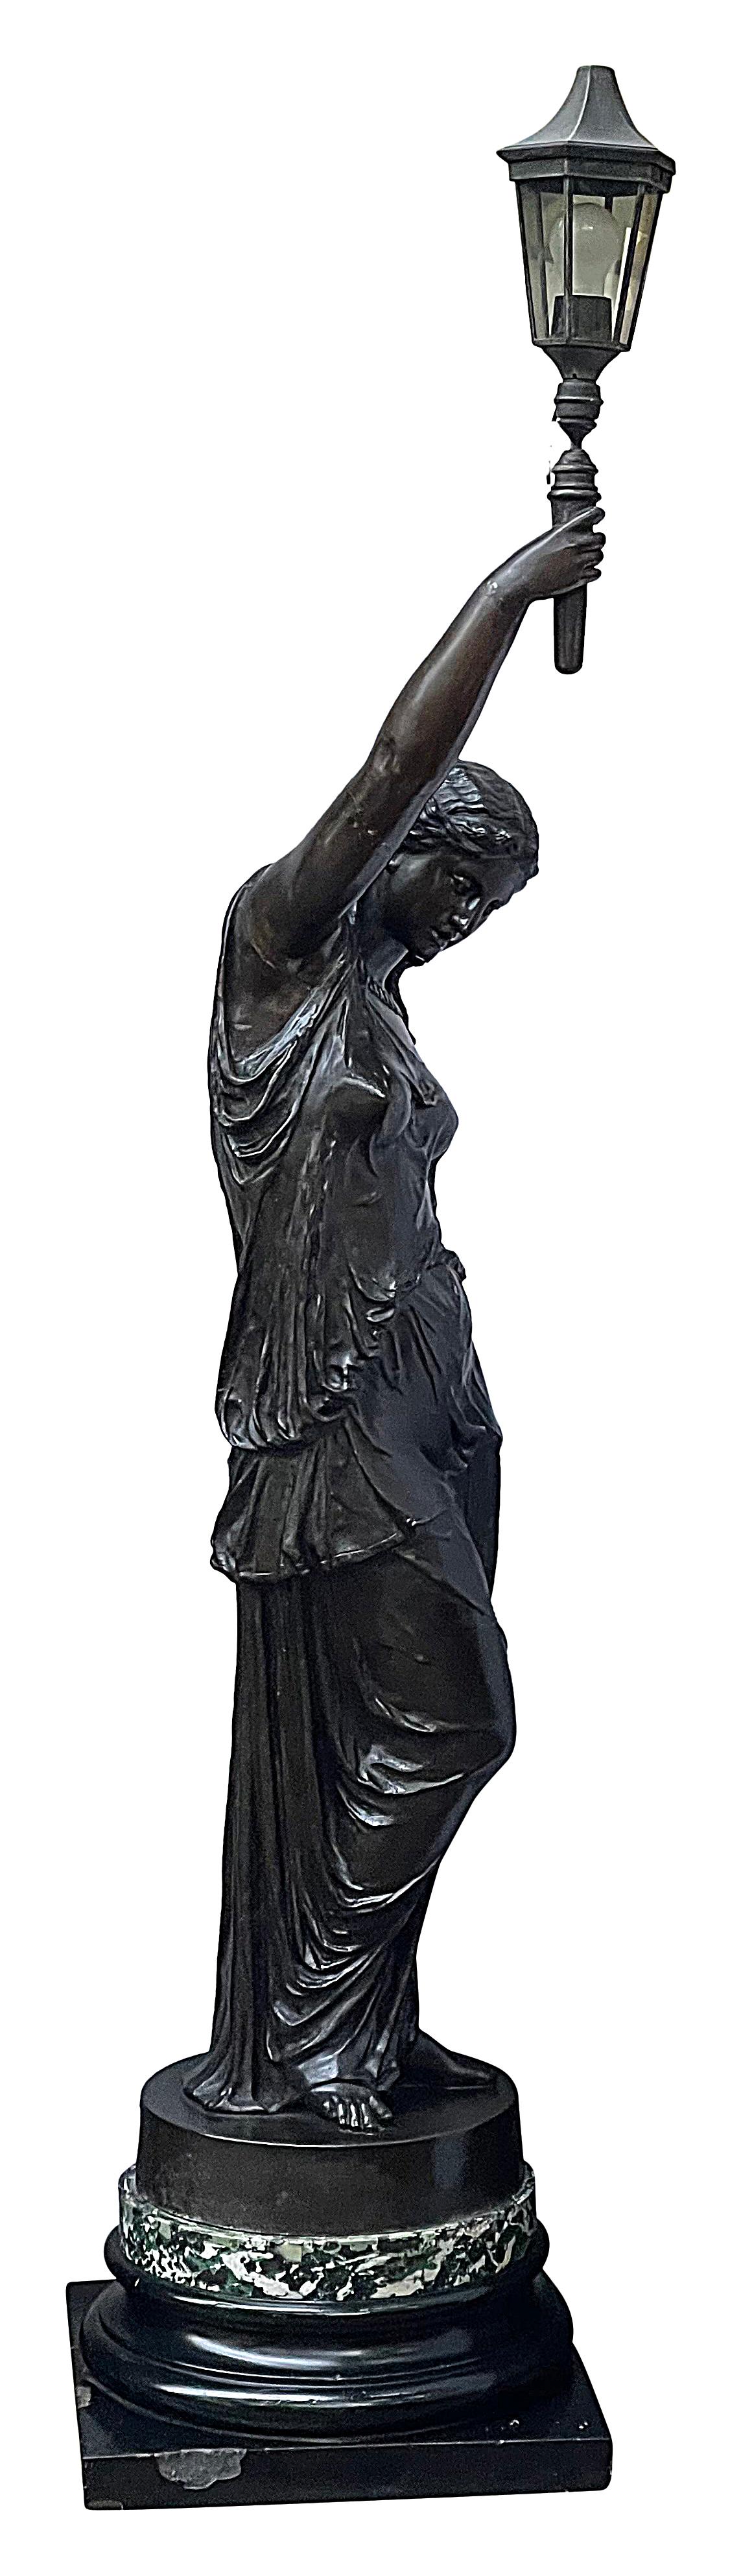 Eine große und beeindruckende klassische patinierte Bronzefackel aus dem 19. Jahrhundert, die auf einem Sockel steht.
Nach der Art von Barbedienne.

Charge 75 SNTKZ